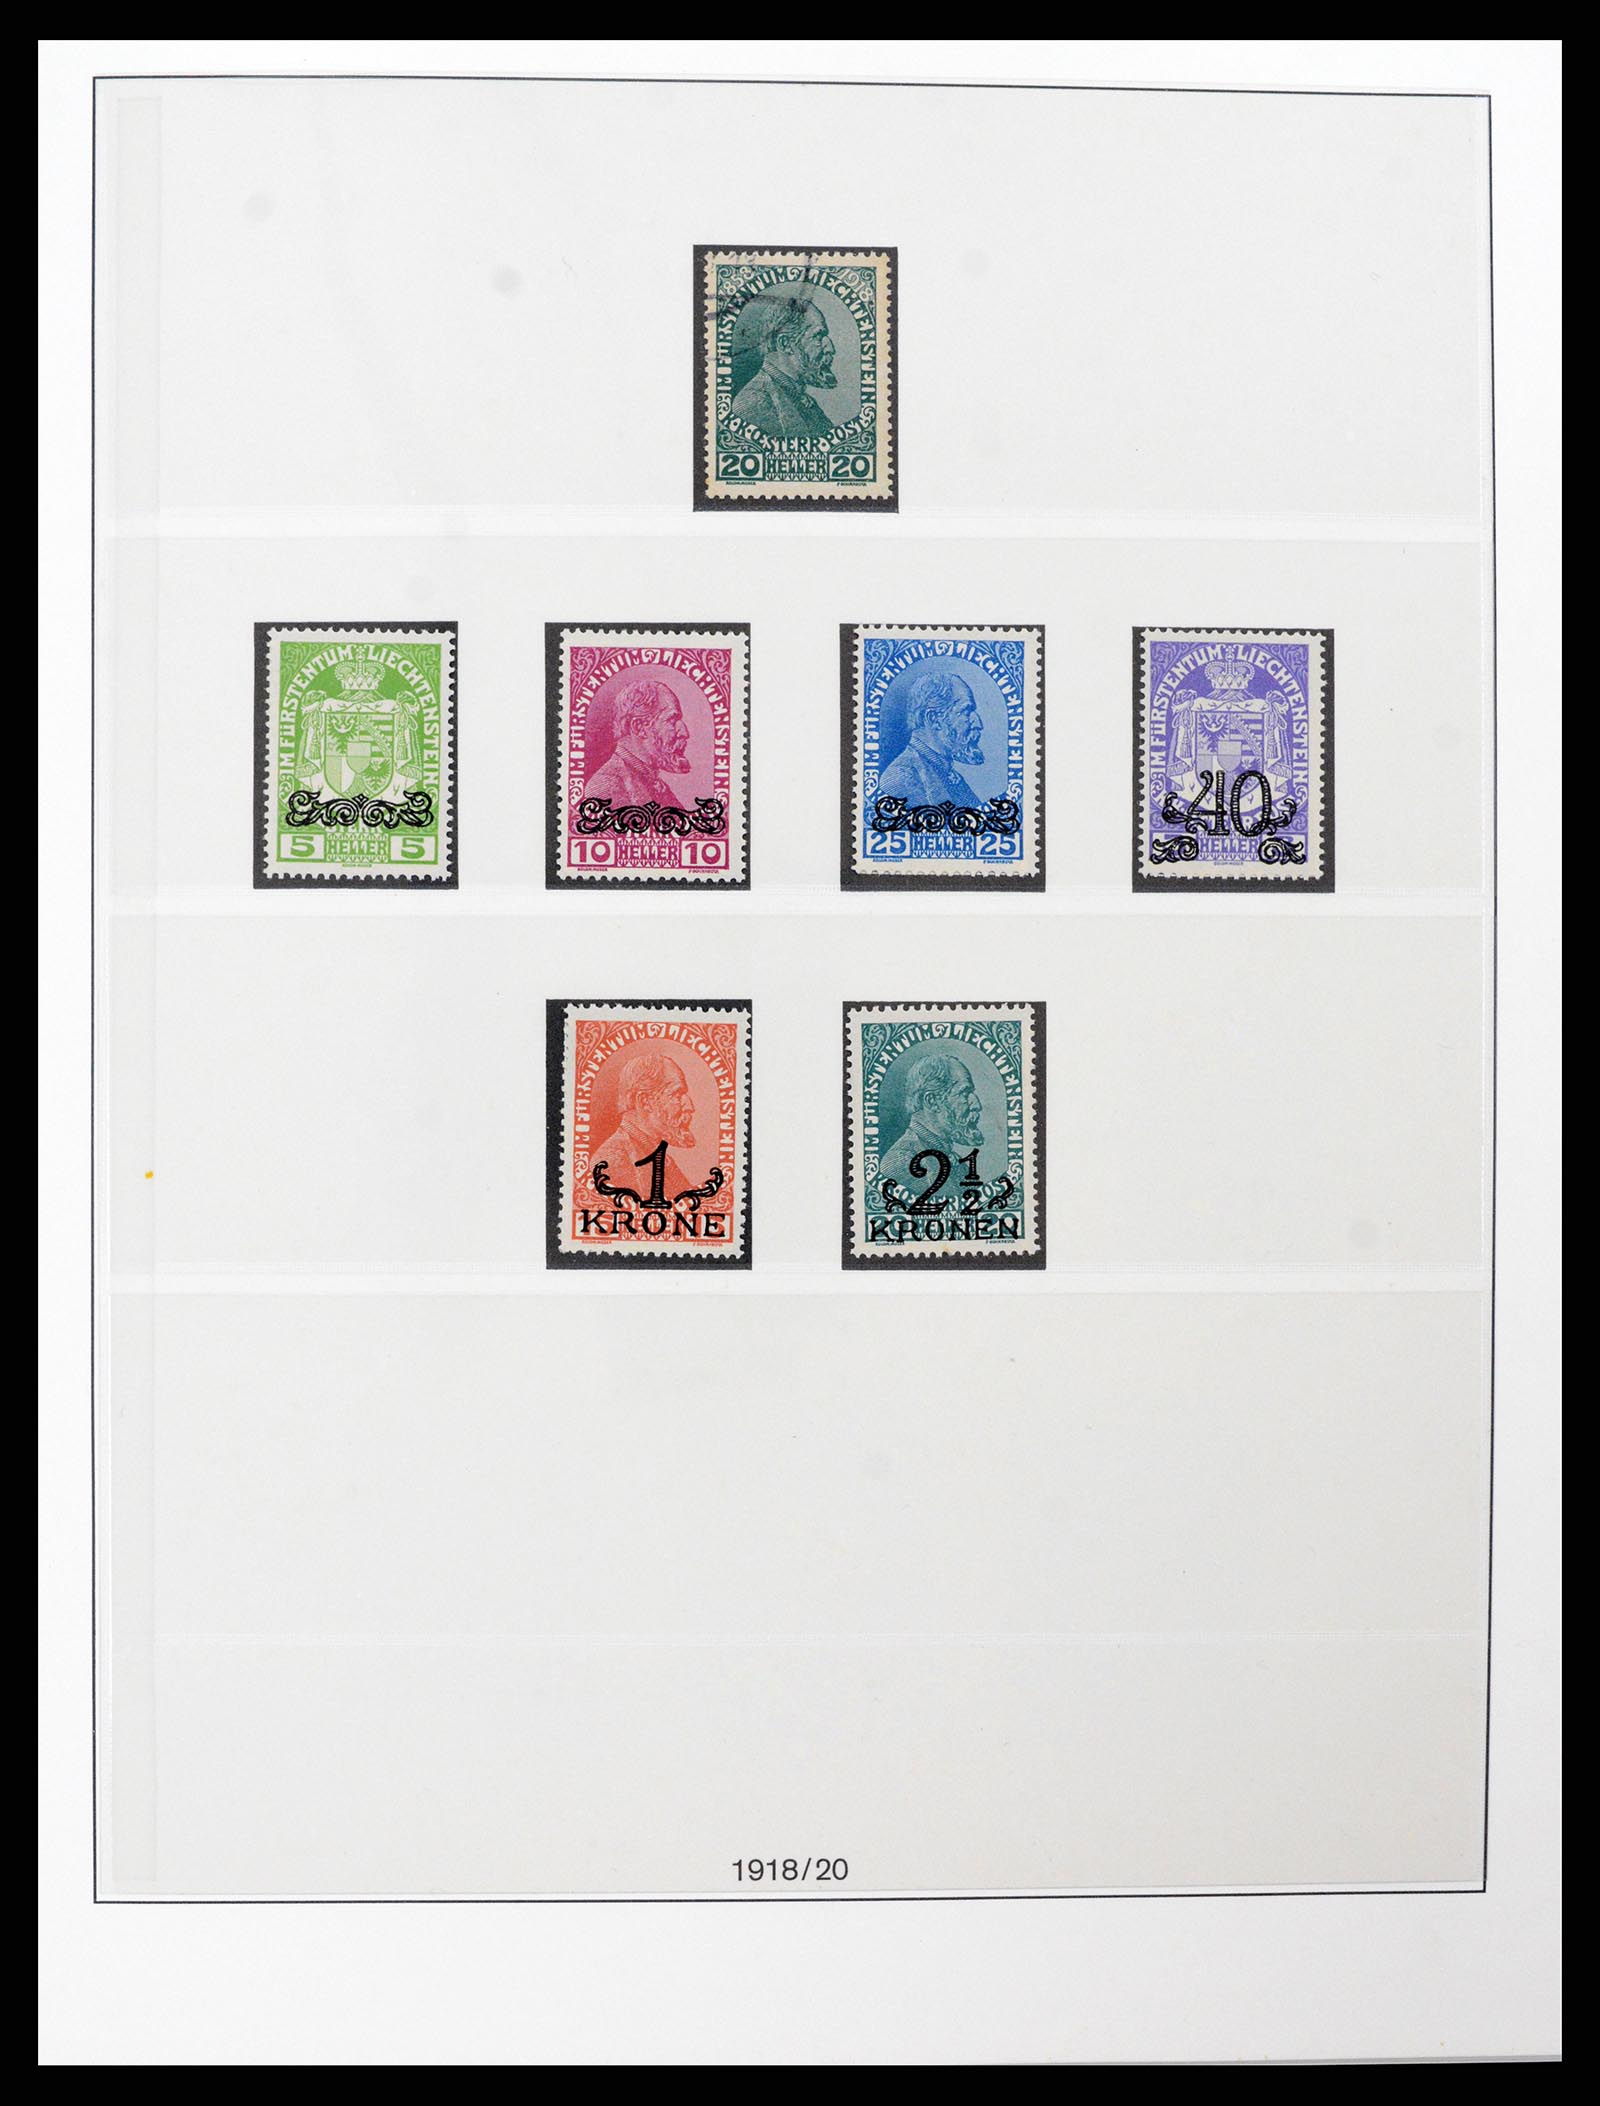 37293 002 - Stamp collection 37293 Liechtenstein 1912-2003.